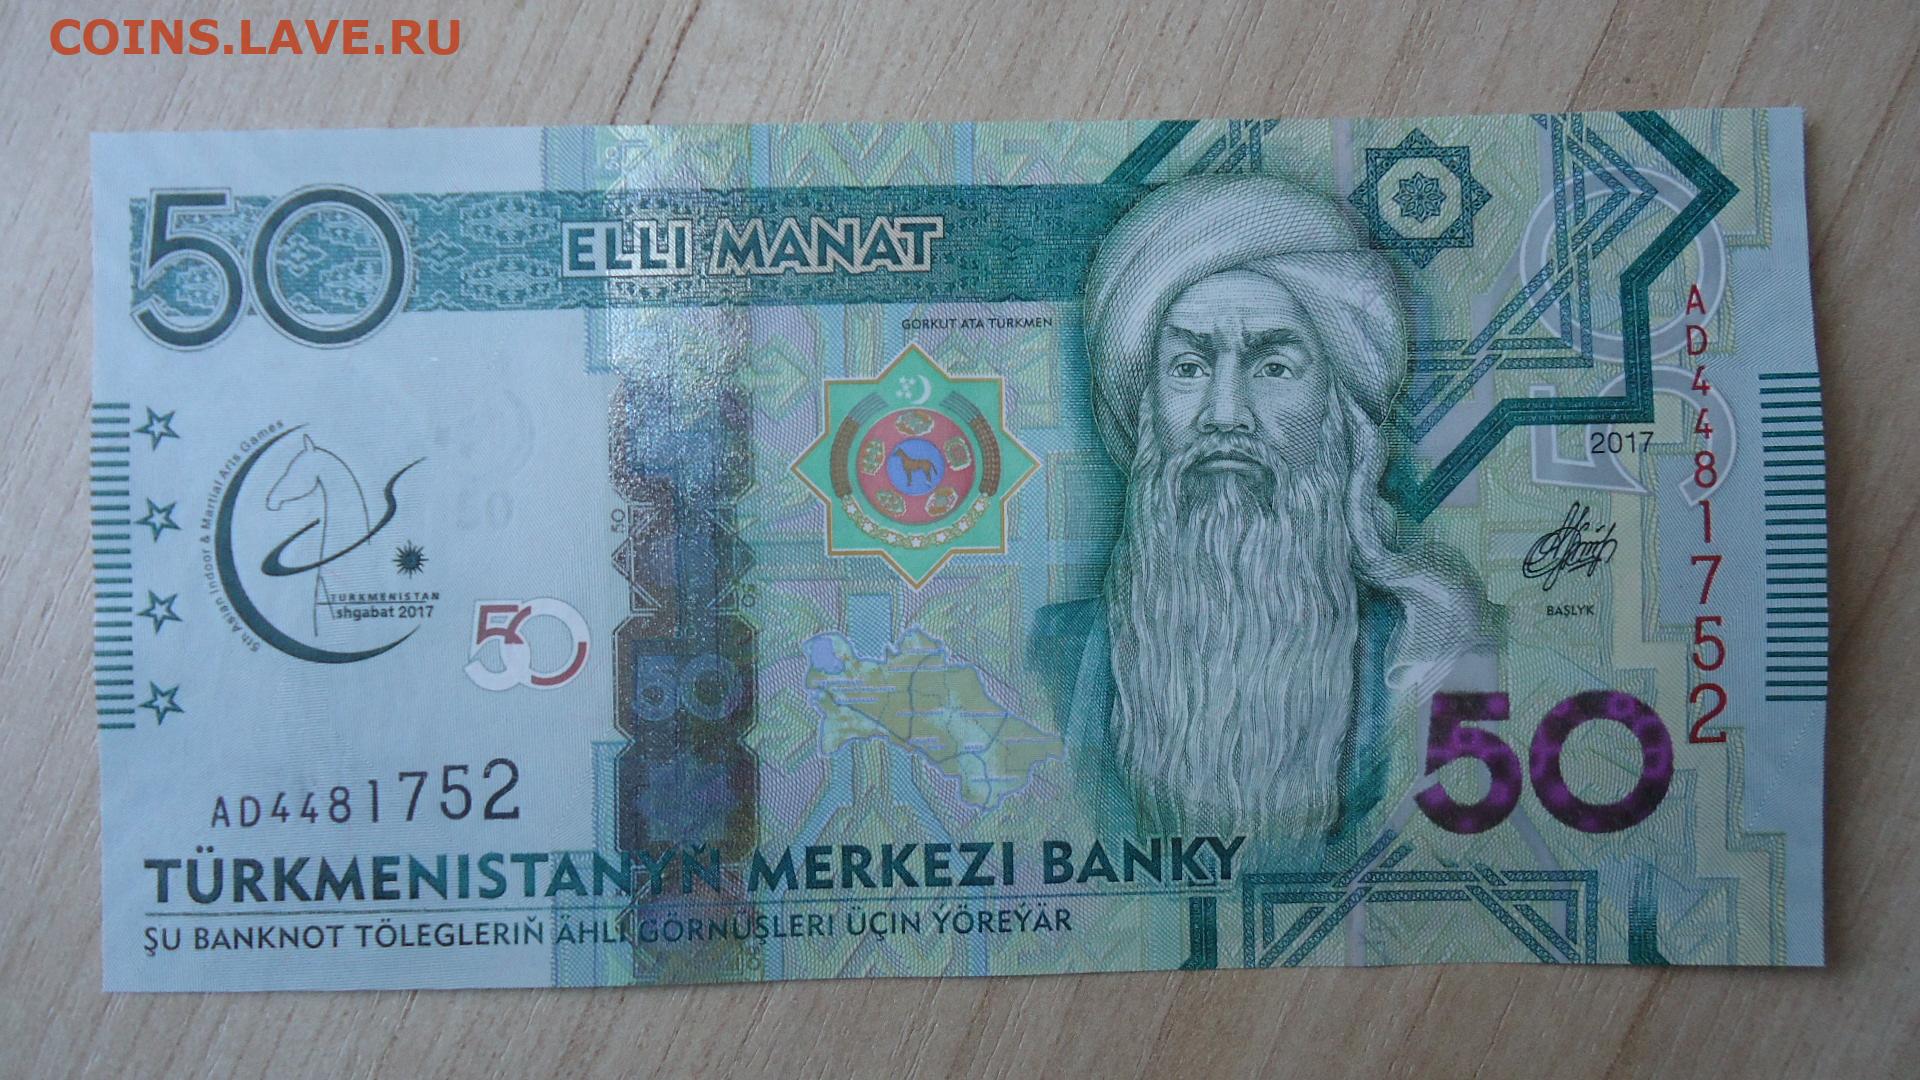 Манат руби. 50 Манат Туркменистан. Банкноты Туркмении 5 манат. 20 Манат Туркменистан. Манат 2017 туркменский.